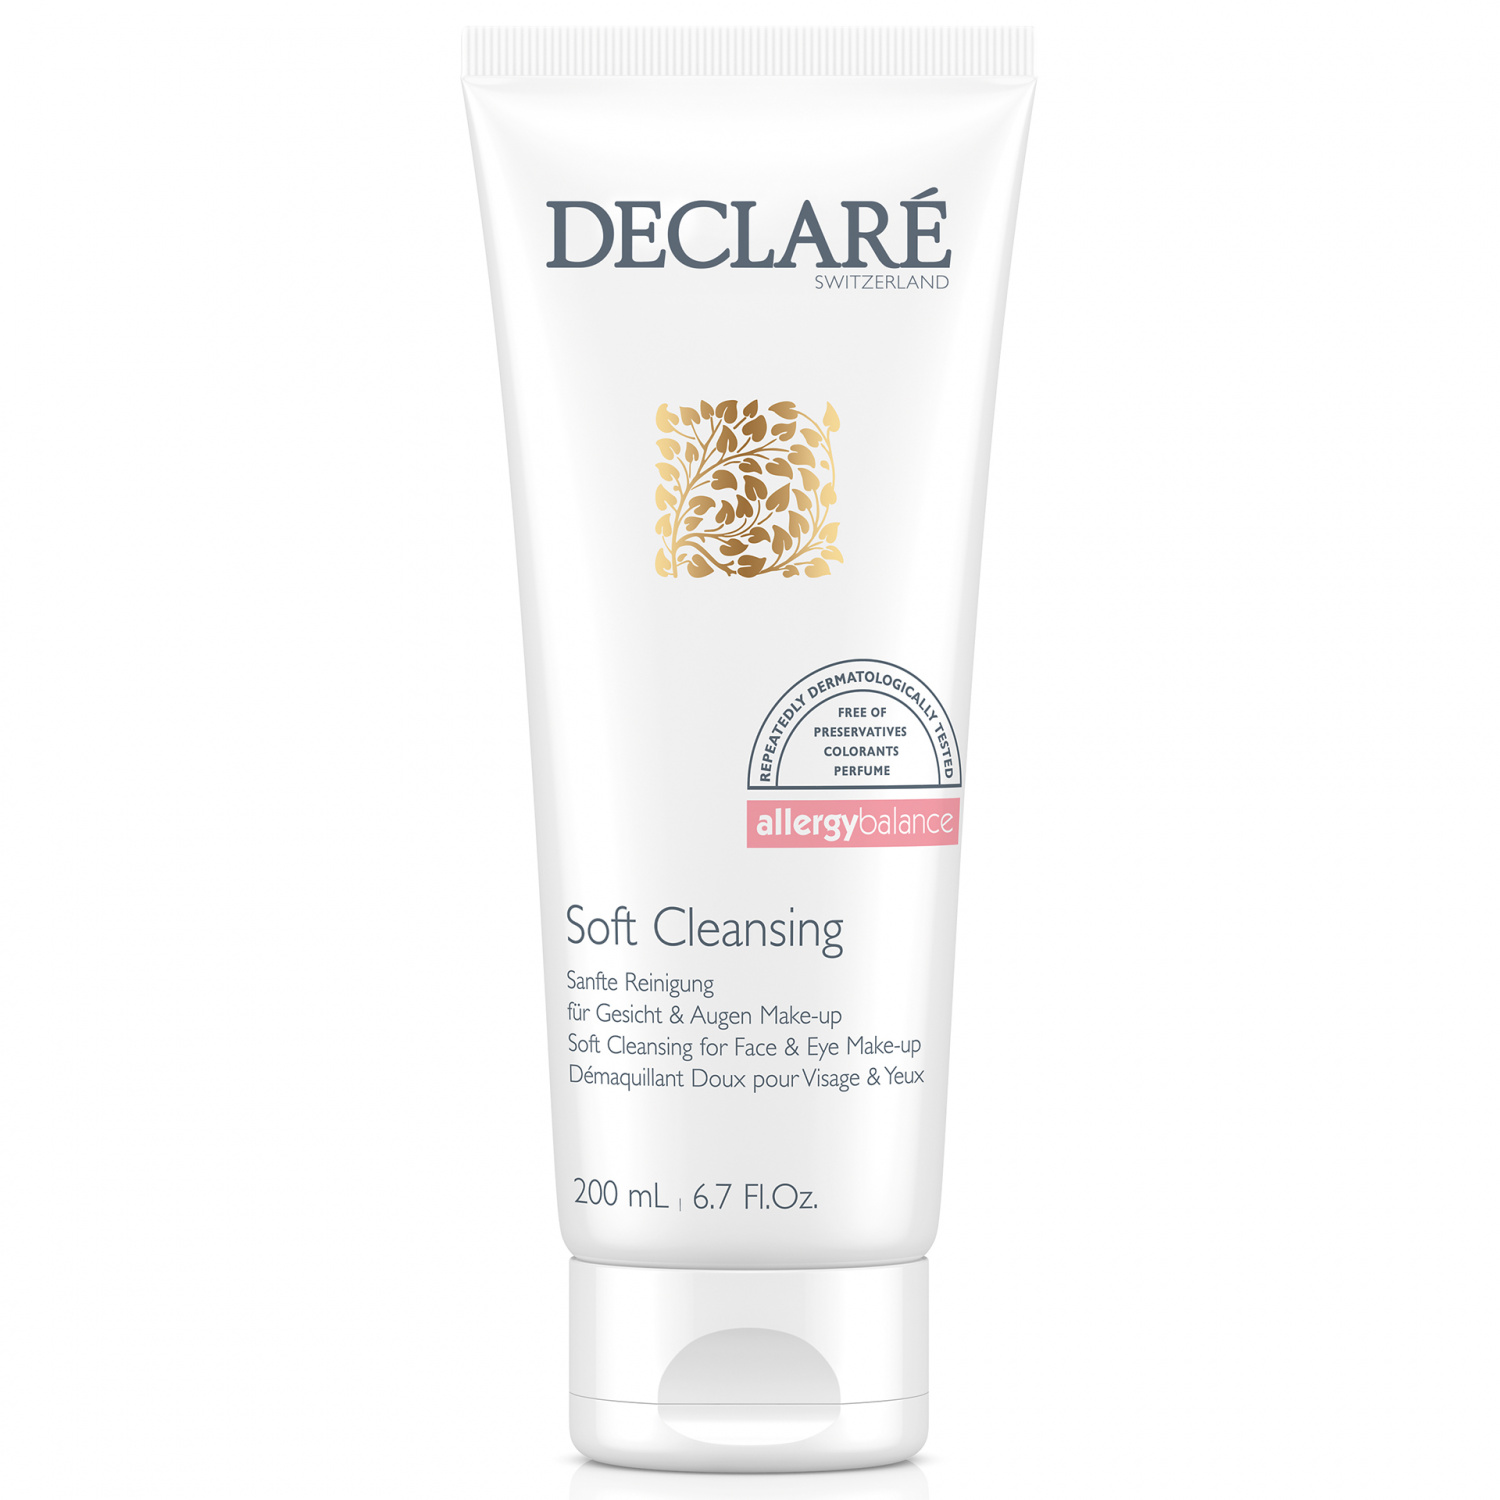 Declare Soft Cleansing for Face & Eye Make-up 200ml - интернет-магазин профессиональной косметики Spadream, изображение 30730